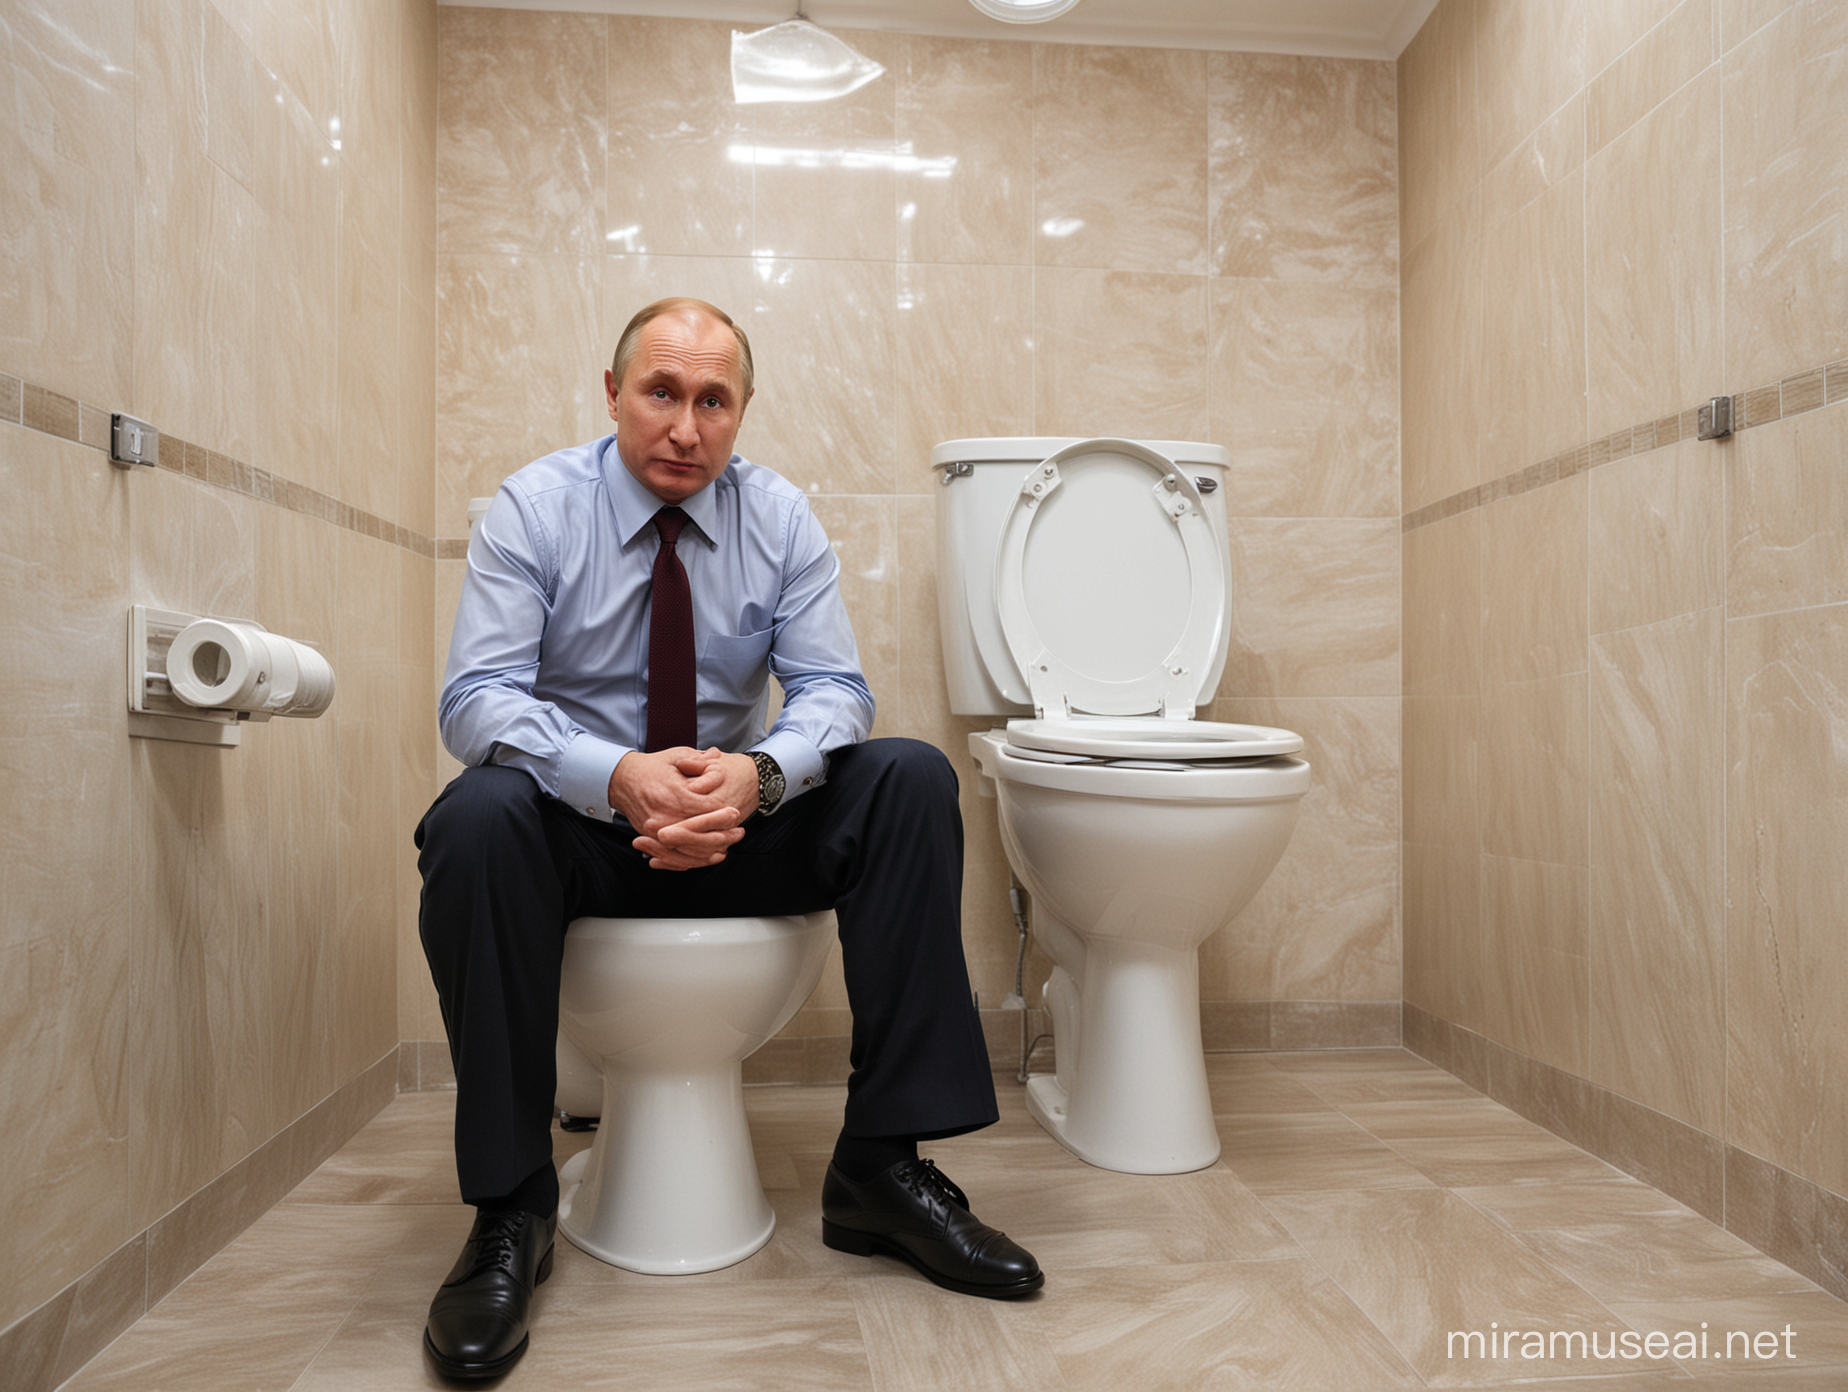 Vladimir Putin Shocked by Bomb in Toilet Scene